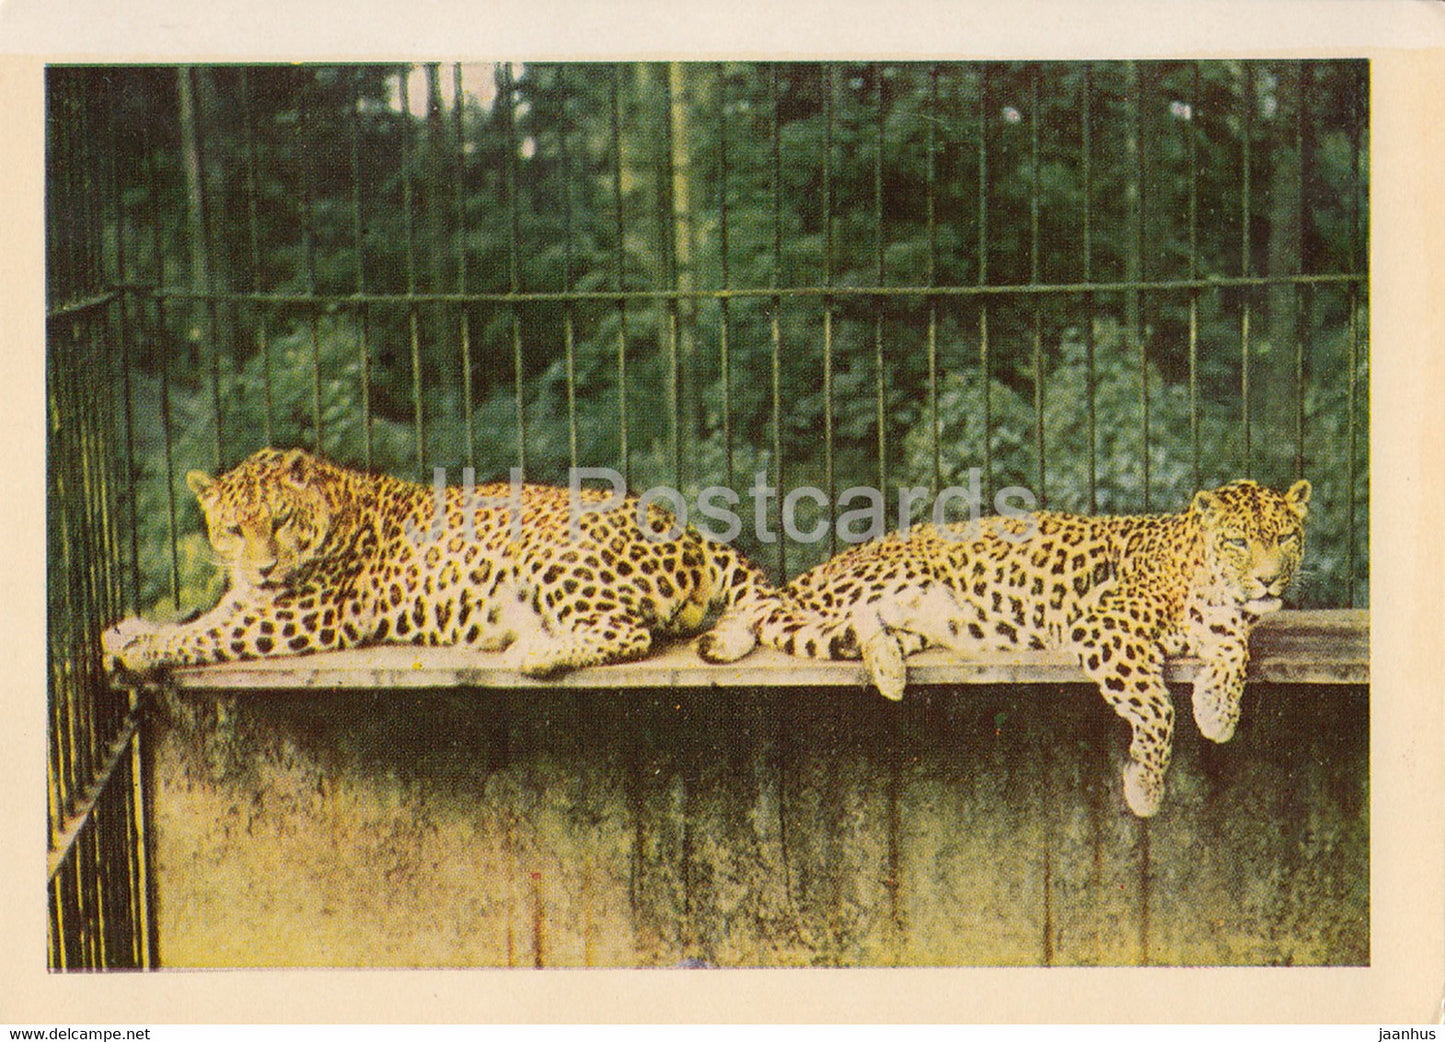 Riga Zoo - Leopard - Panthera pardus - Latvia USSR - unused - JH Postcards